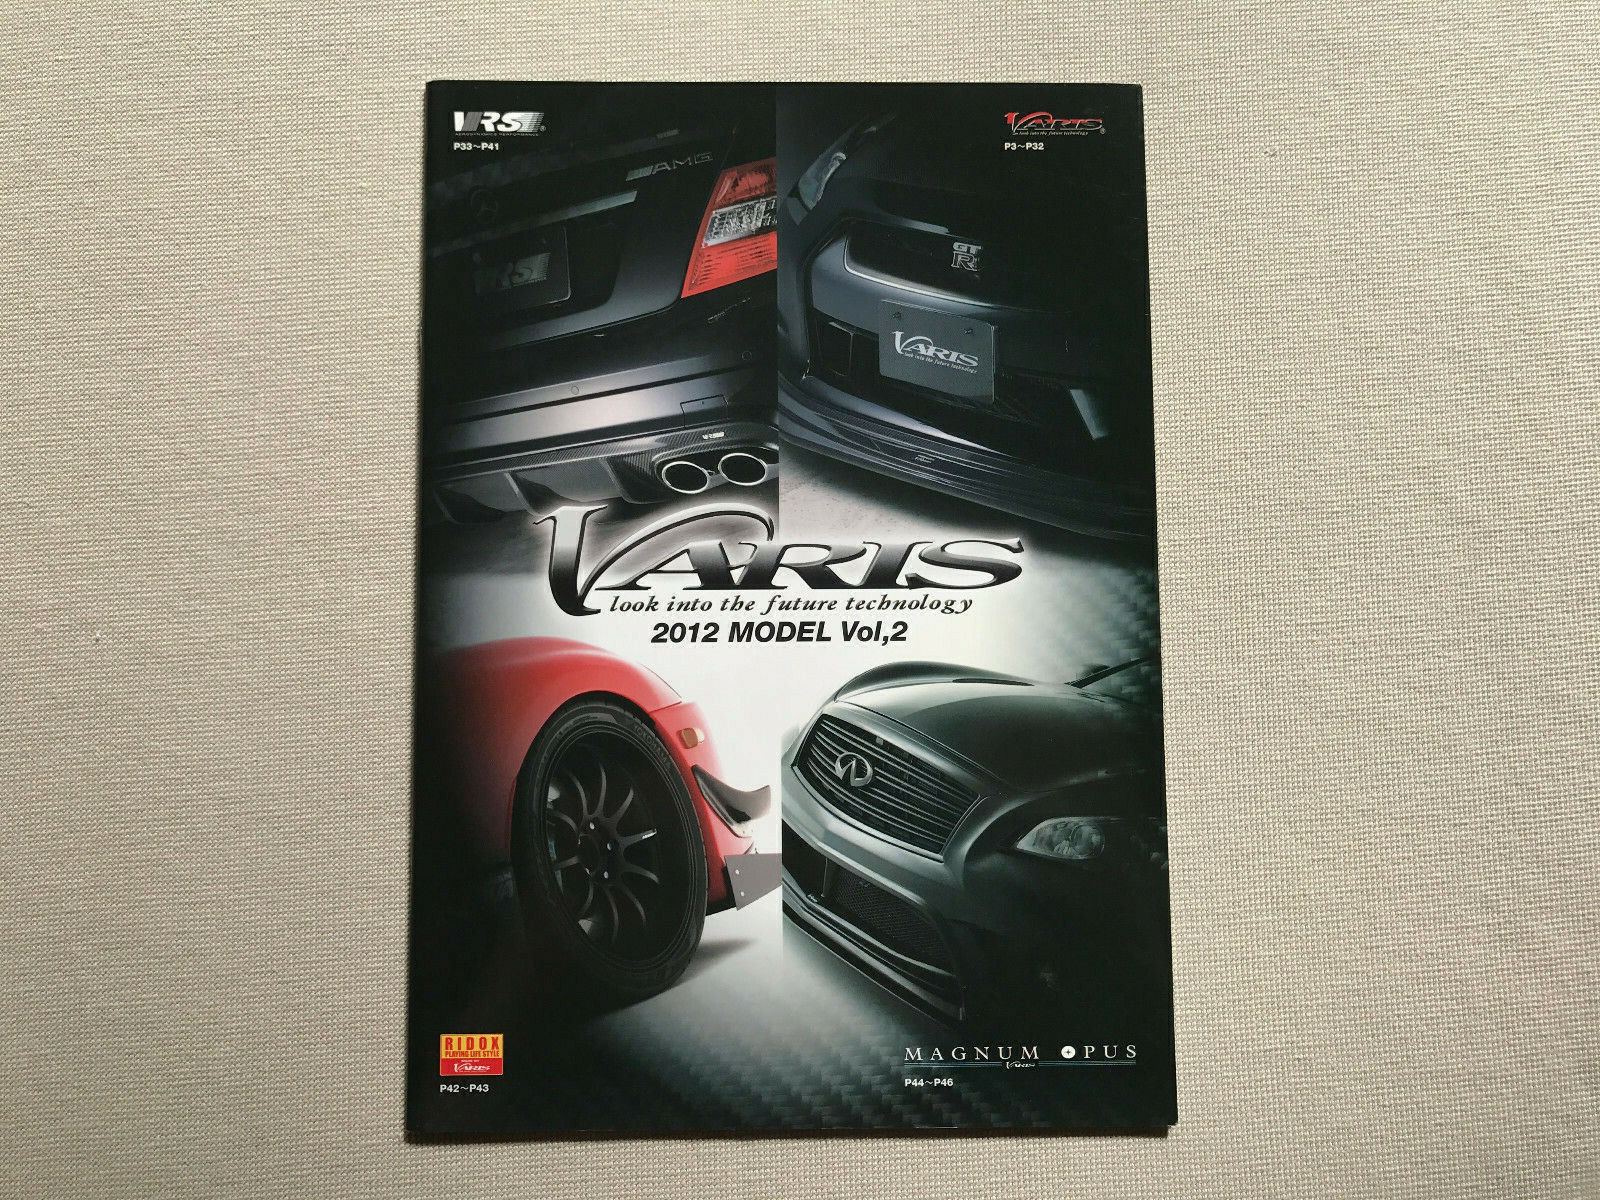 Varis Brochure Catalog R35 Z34 Impreza WRX STI Lancer Evolution Supra 